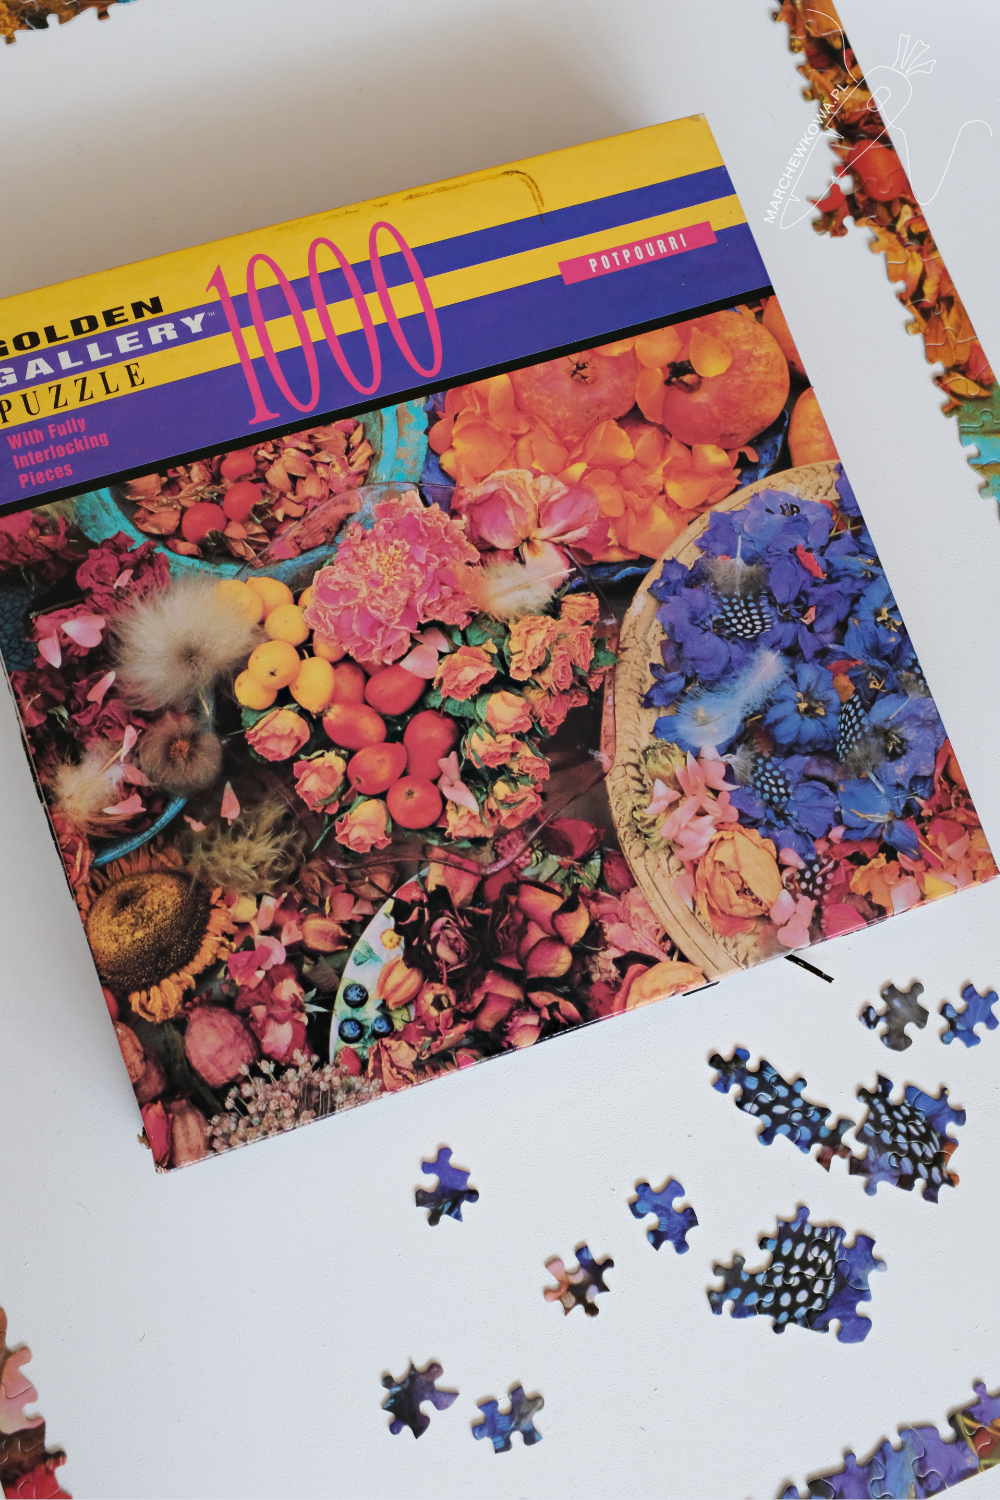 vintage jigsaw puzzle, Glden Gallery, 1990s, potpourri, flowers